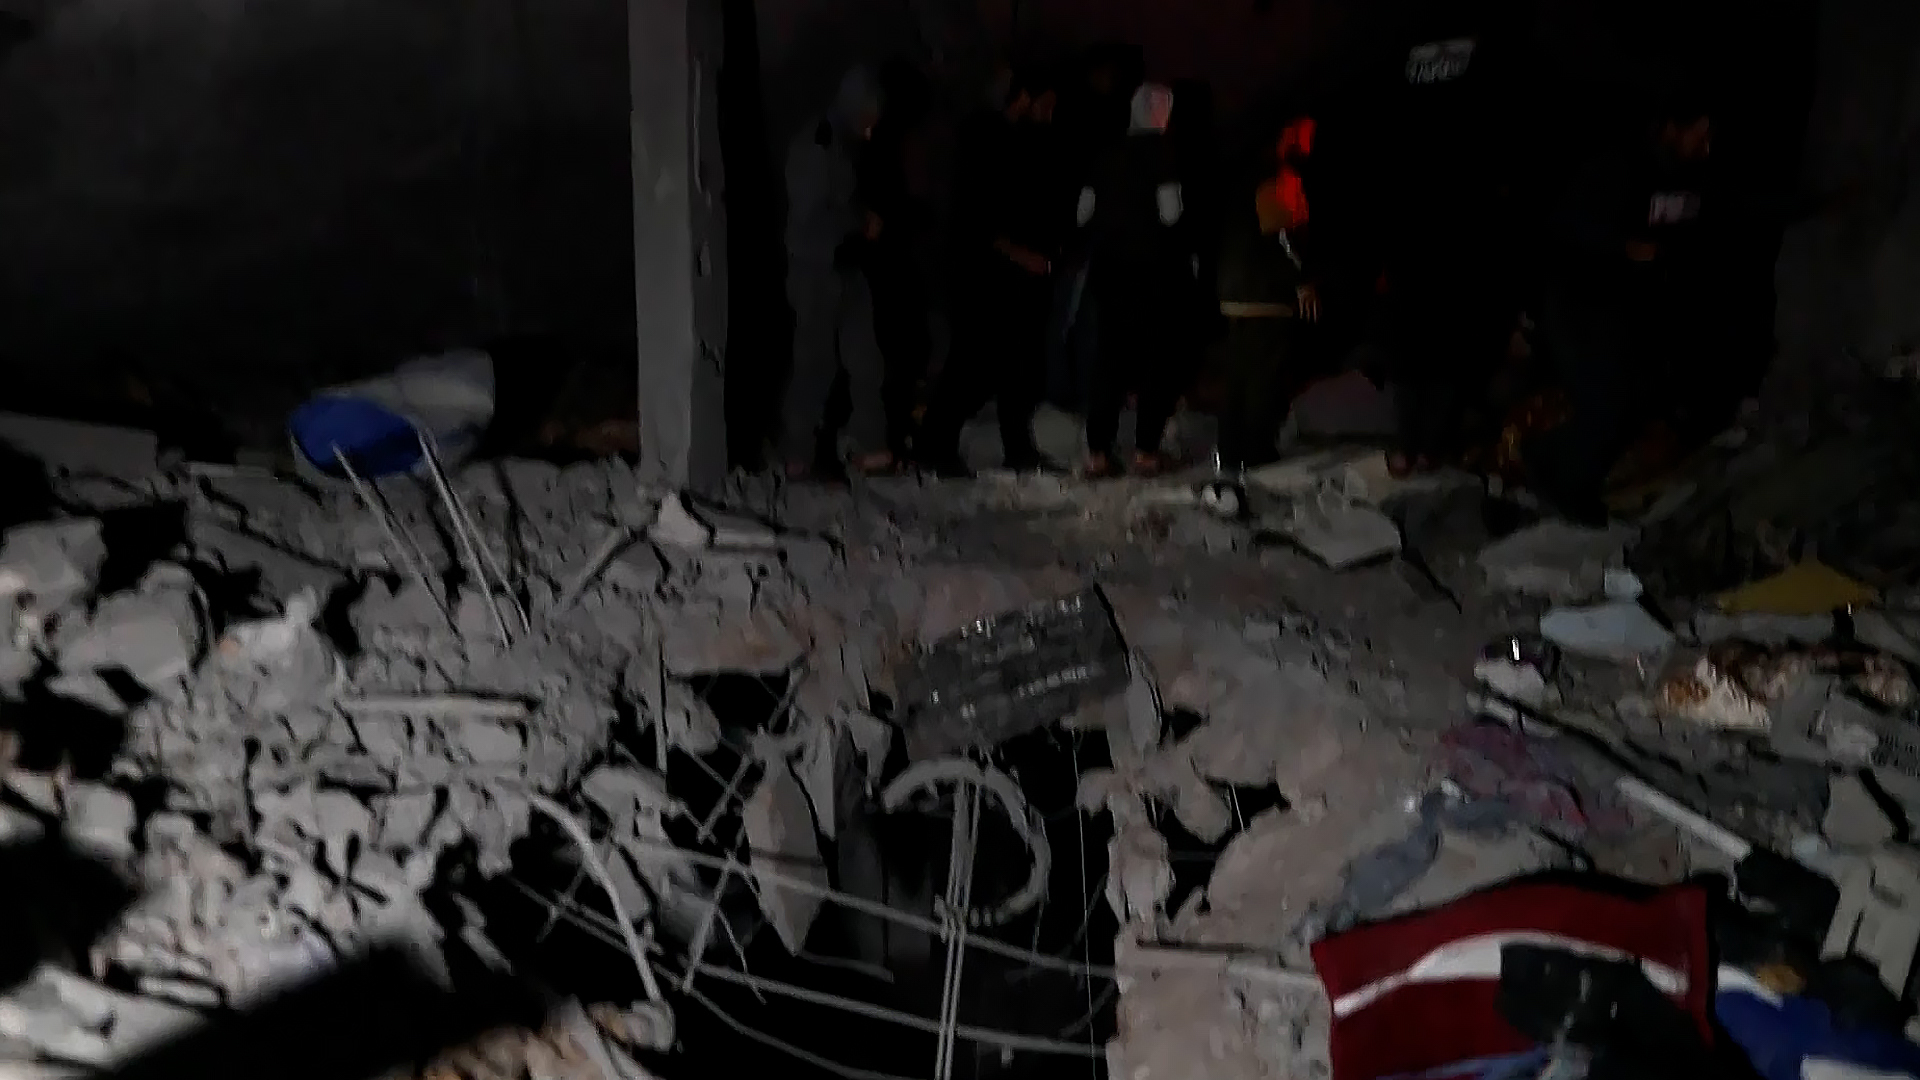 18 شهيدا في قصف منزل بمخيم النصيرات وسط غزة | البرامج – البوكس نيوز